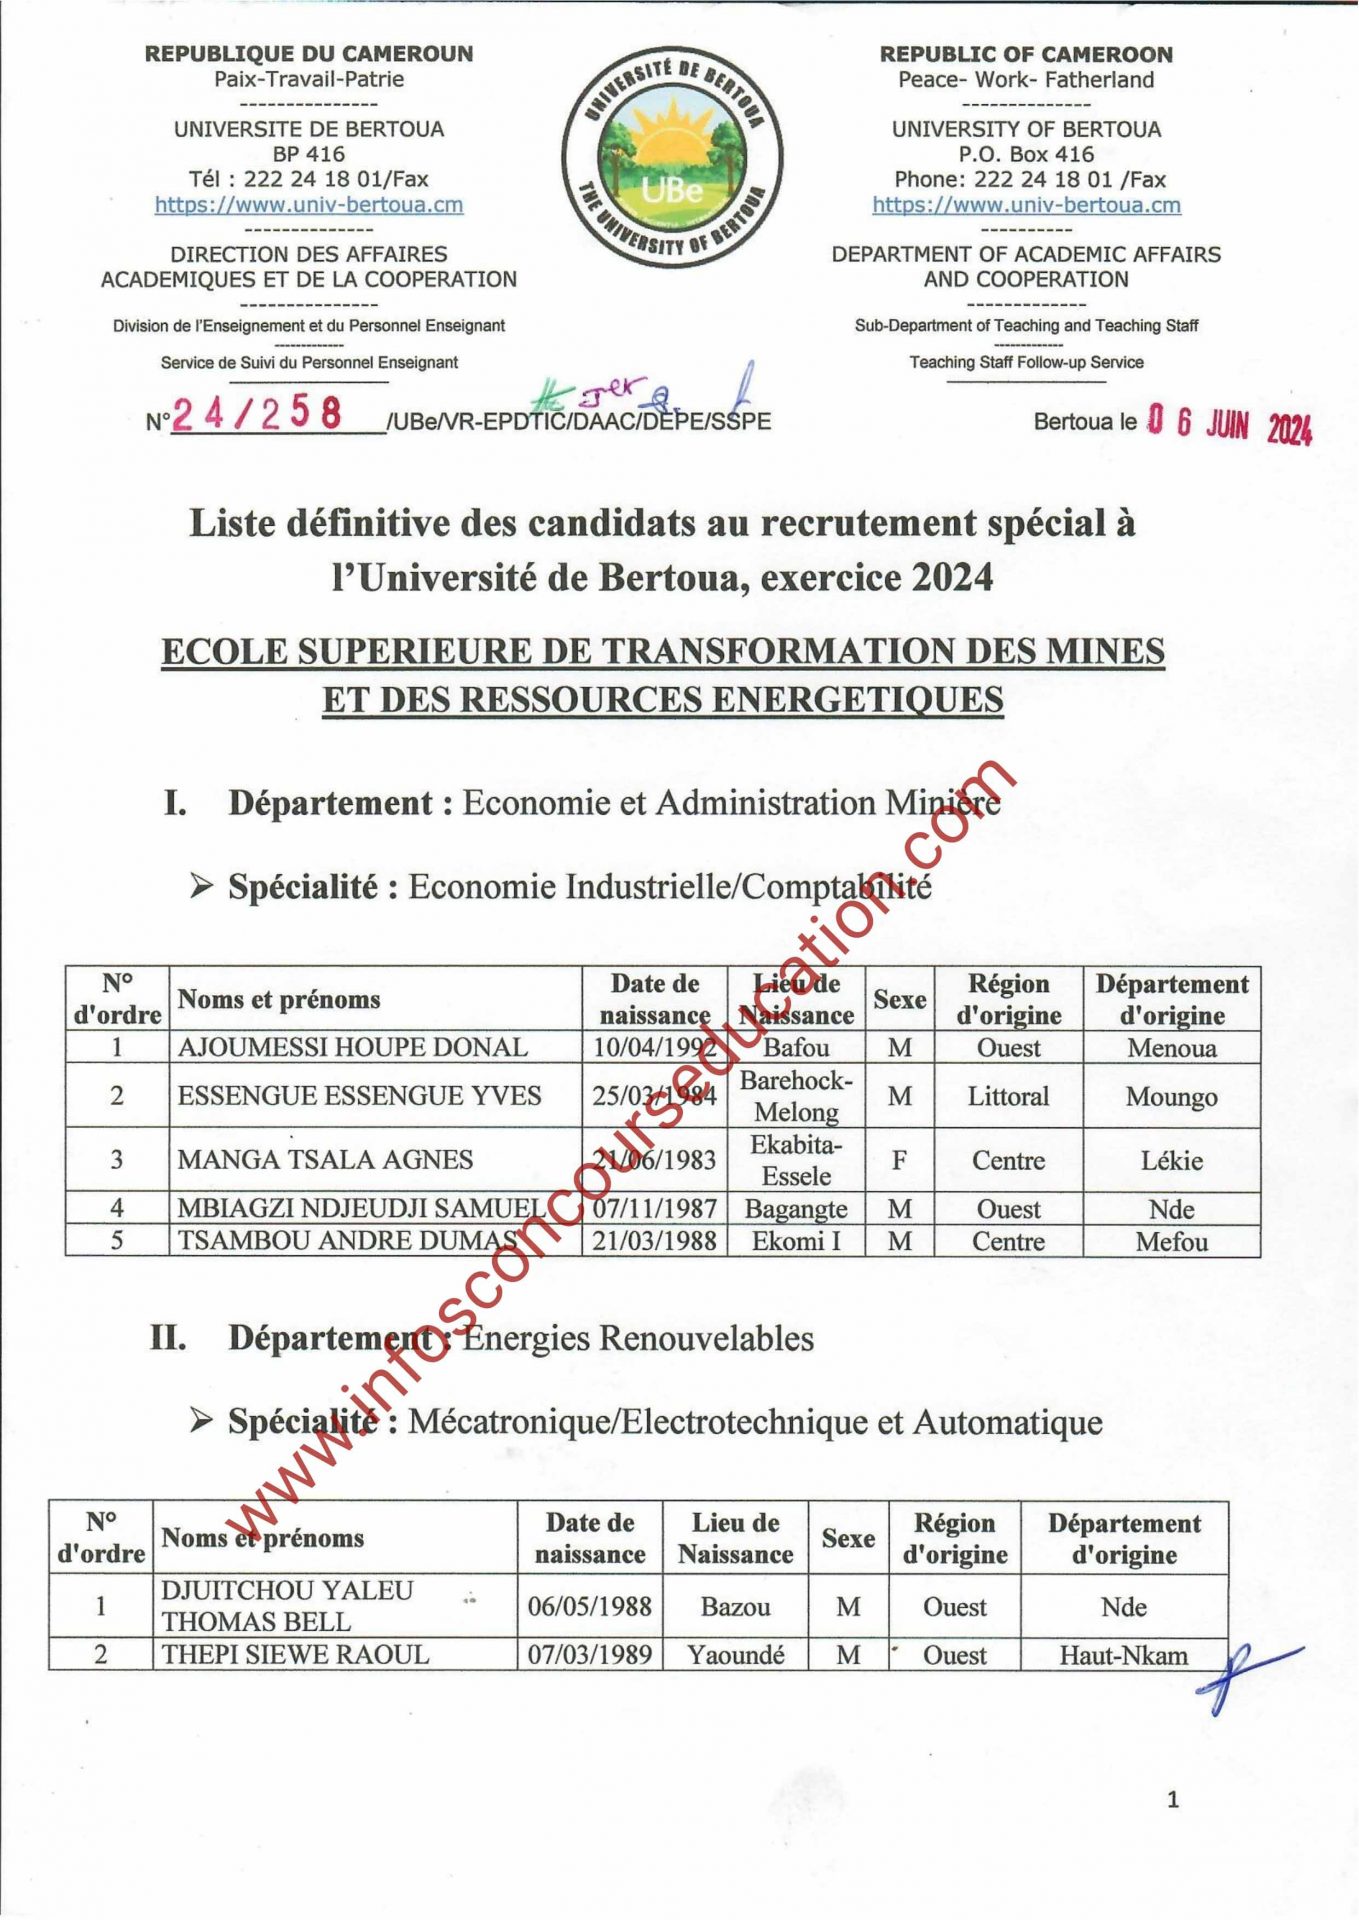 Liste définitive des candidats au recrutement spécial d'enseignants à l'Université de Bertoua, exercice 2024.